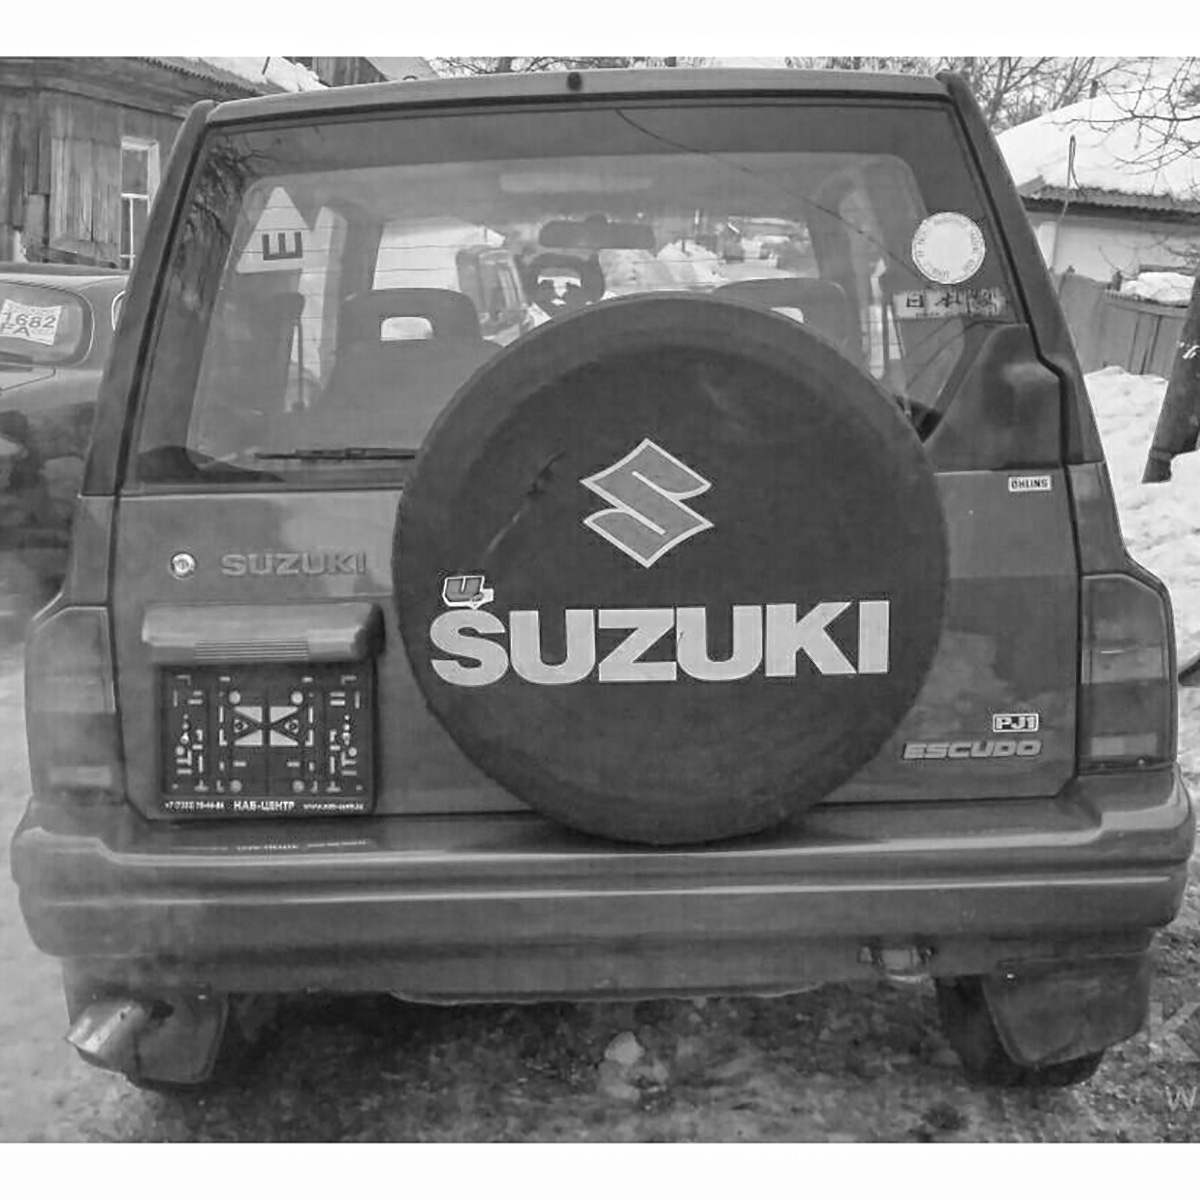 Двери эскудо. Сузуки эскудо 1988. Дверь на Сузуки Витара 1996г. Дверь багажника Сузуки эскудо. Сузуки Гранд Витара 1990г.